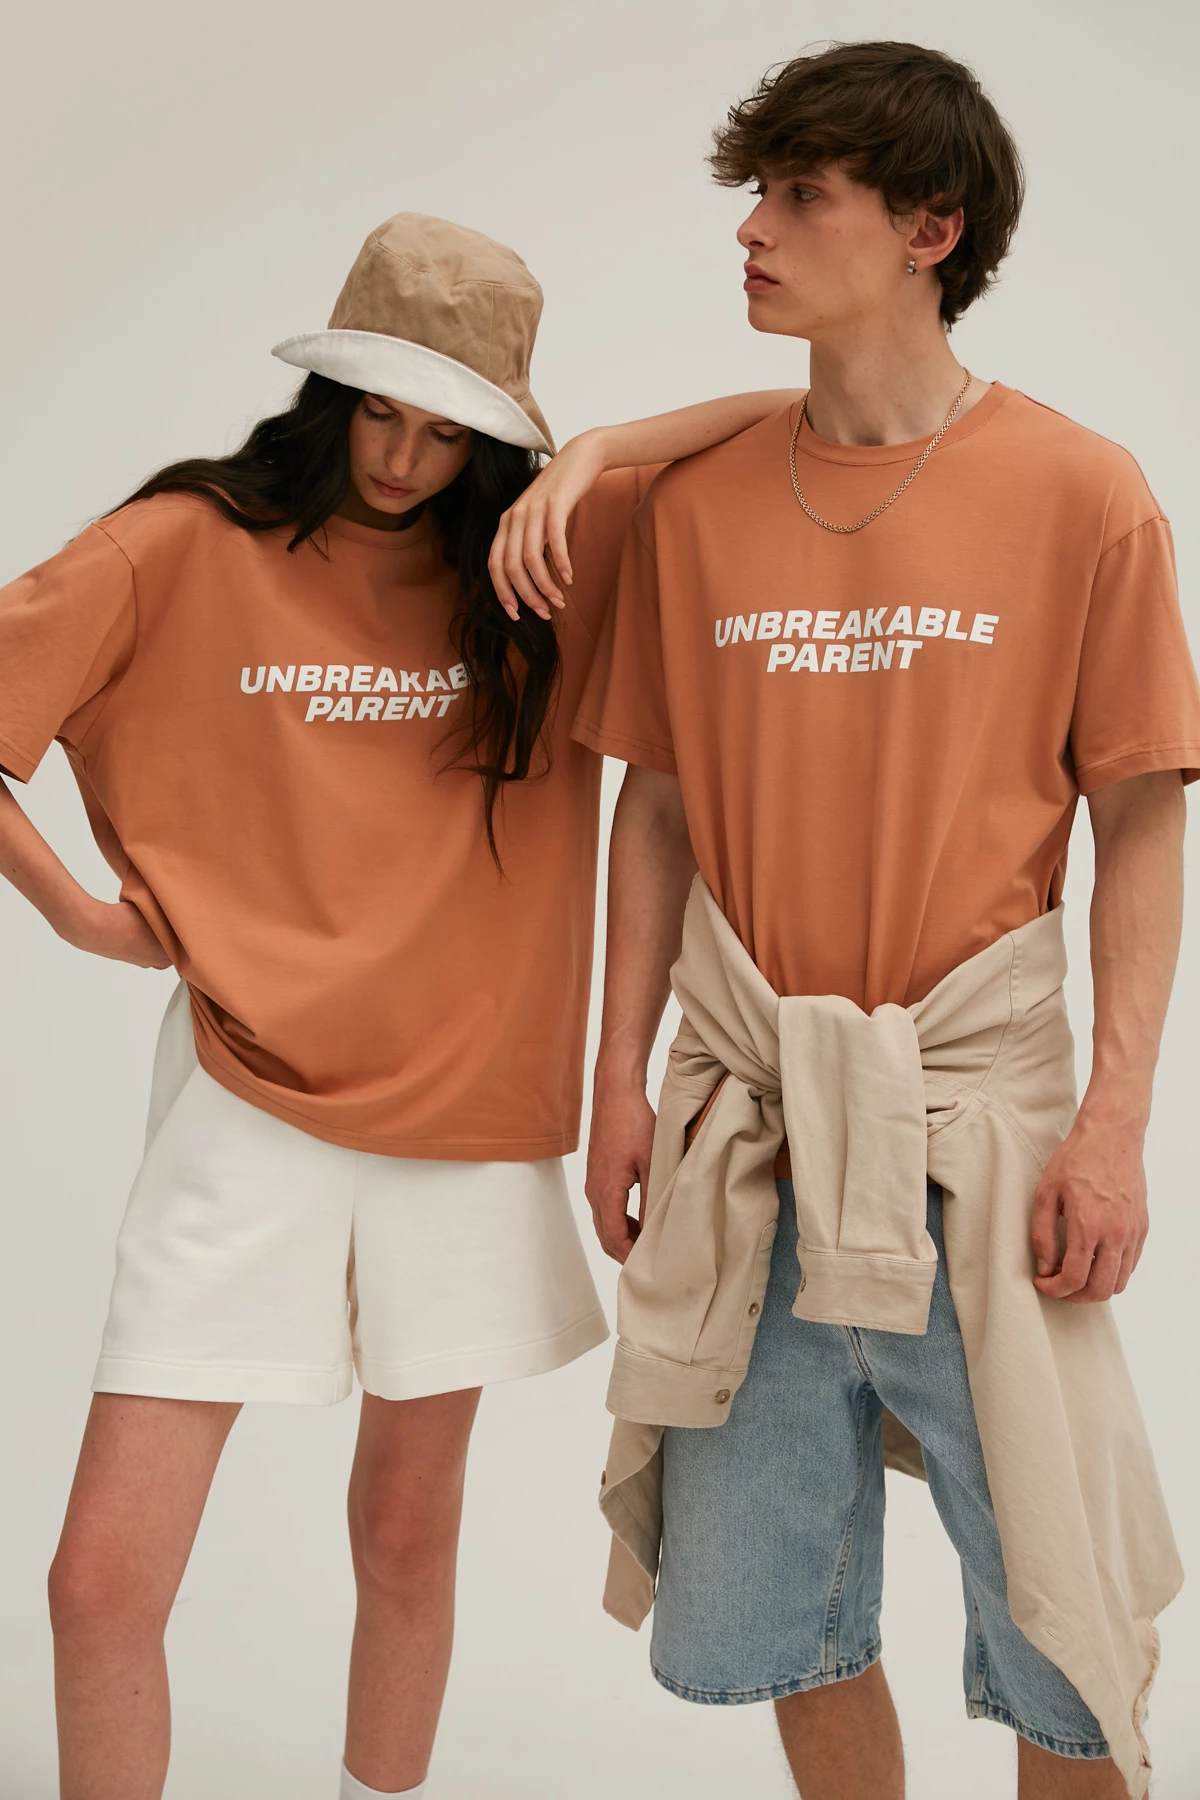 Карамельна унісекс-футболка з написом "Unbreakable parent" з трикотажу, фото 7